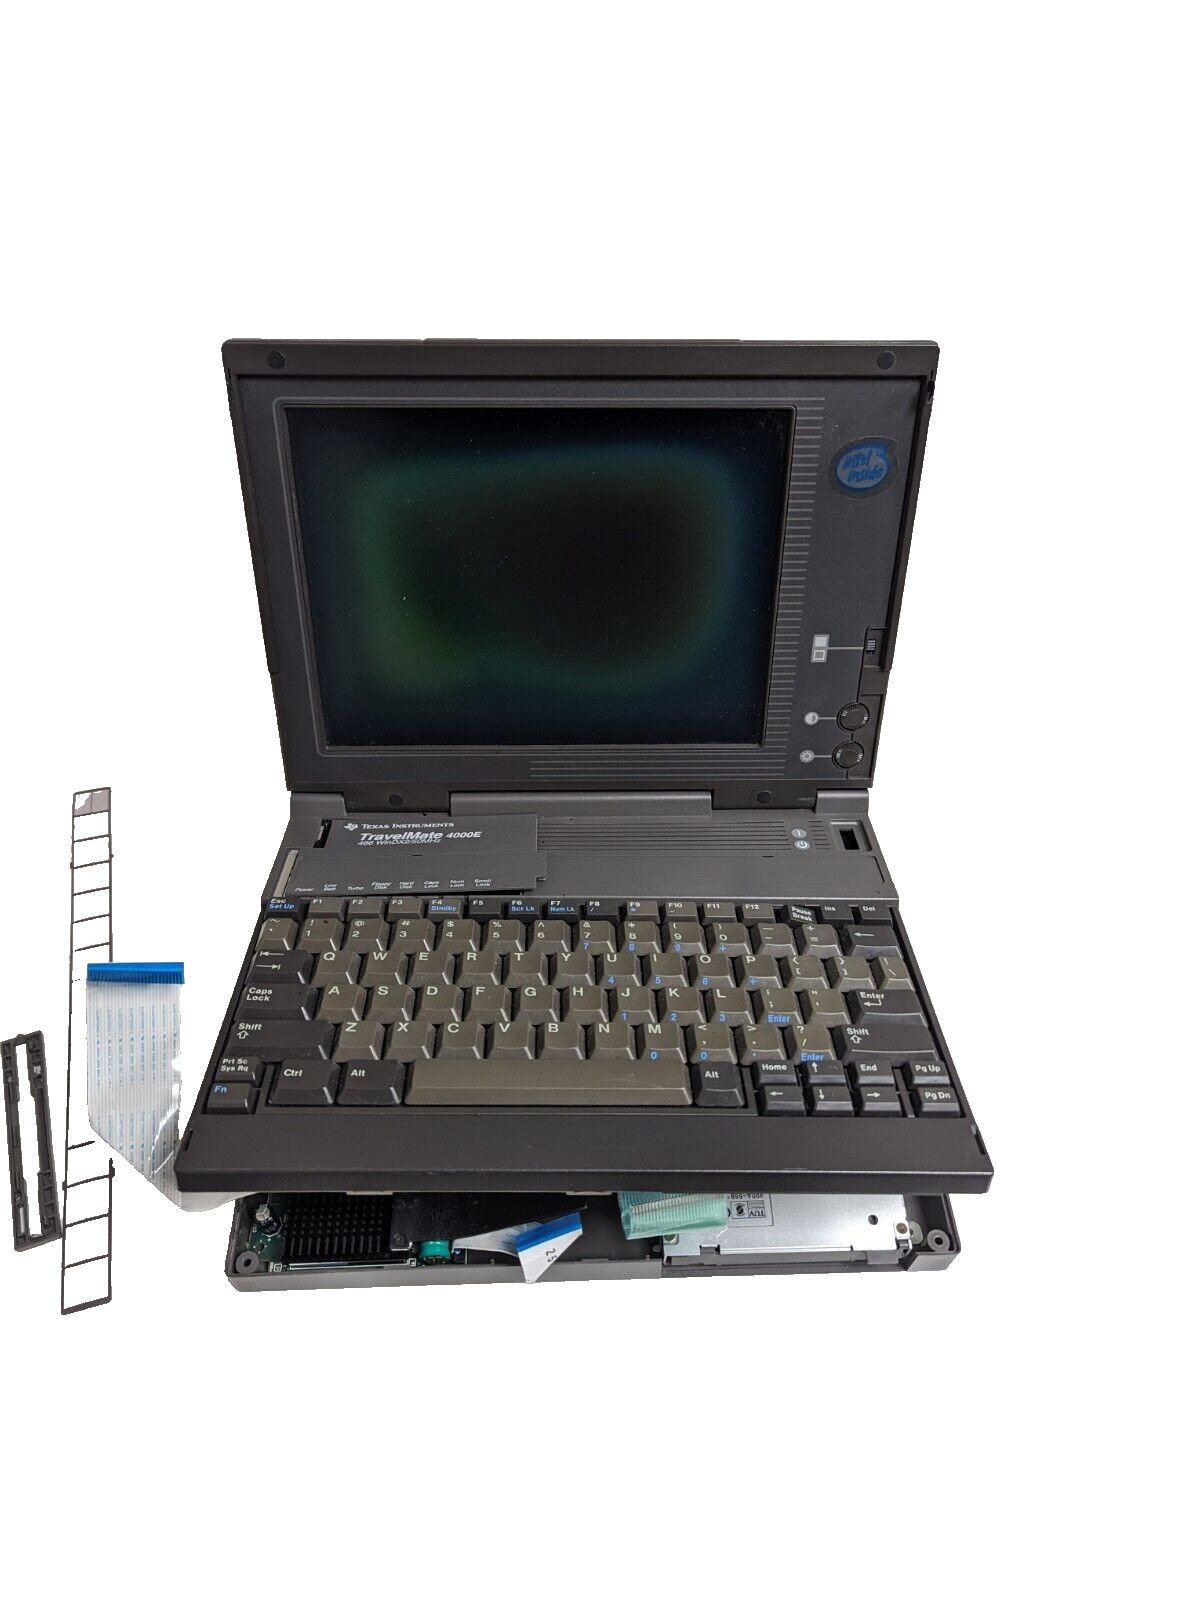 VINTAGE Texas Instruments TravelMate 4000E Laptop 486DX2 for parts